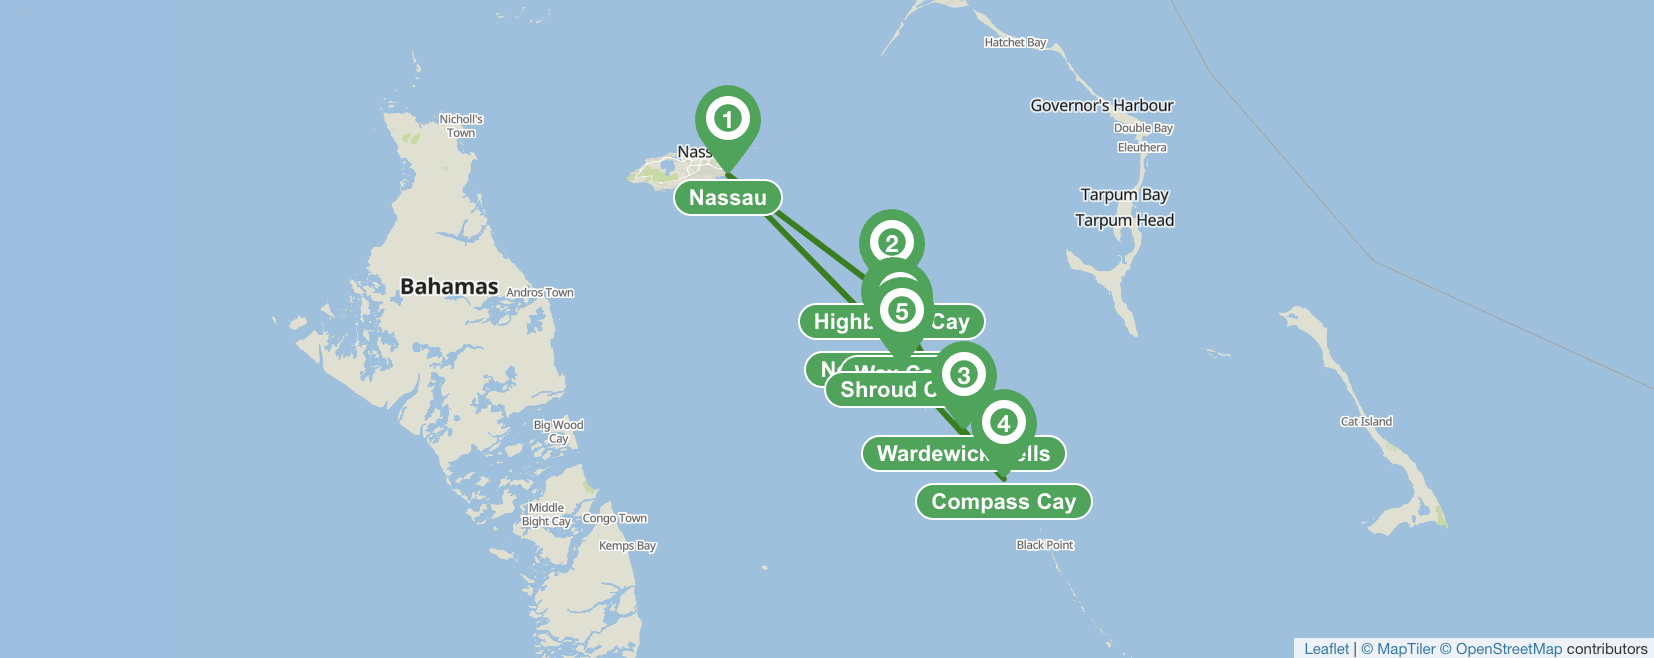 Itinerario de navegacion en Nassau - 7 dias